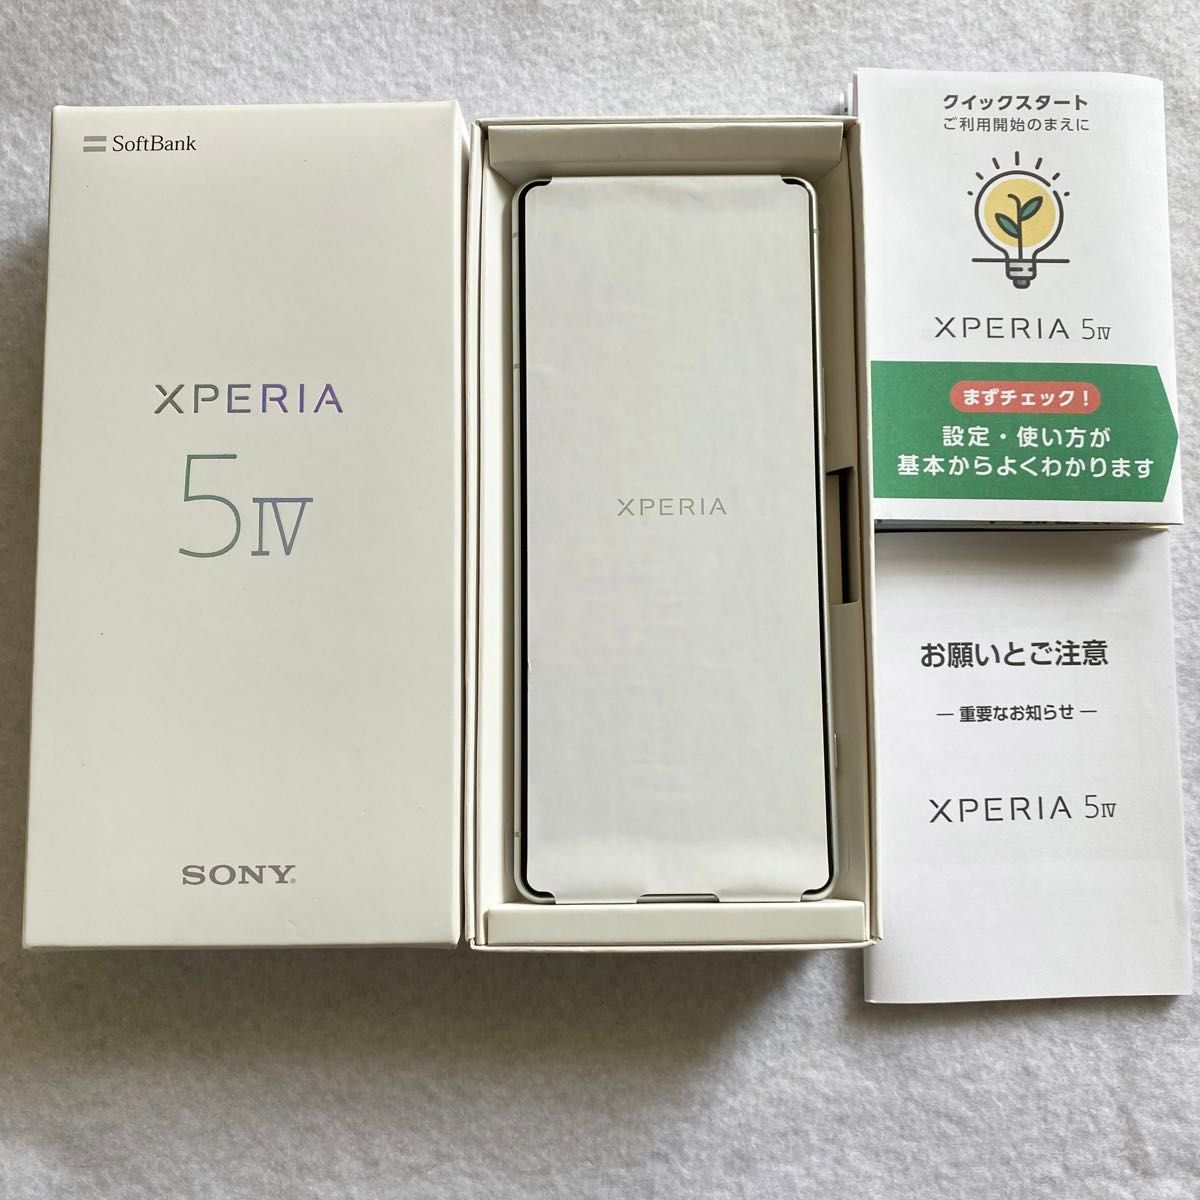 【中古】Xperia 5 IV エクリュホワイト ソフトバンク